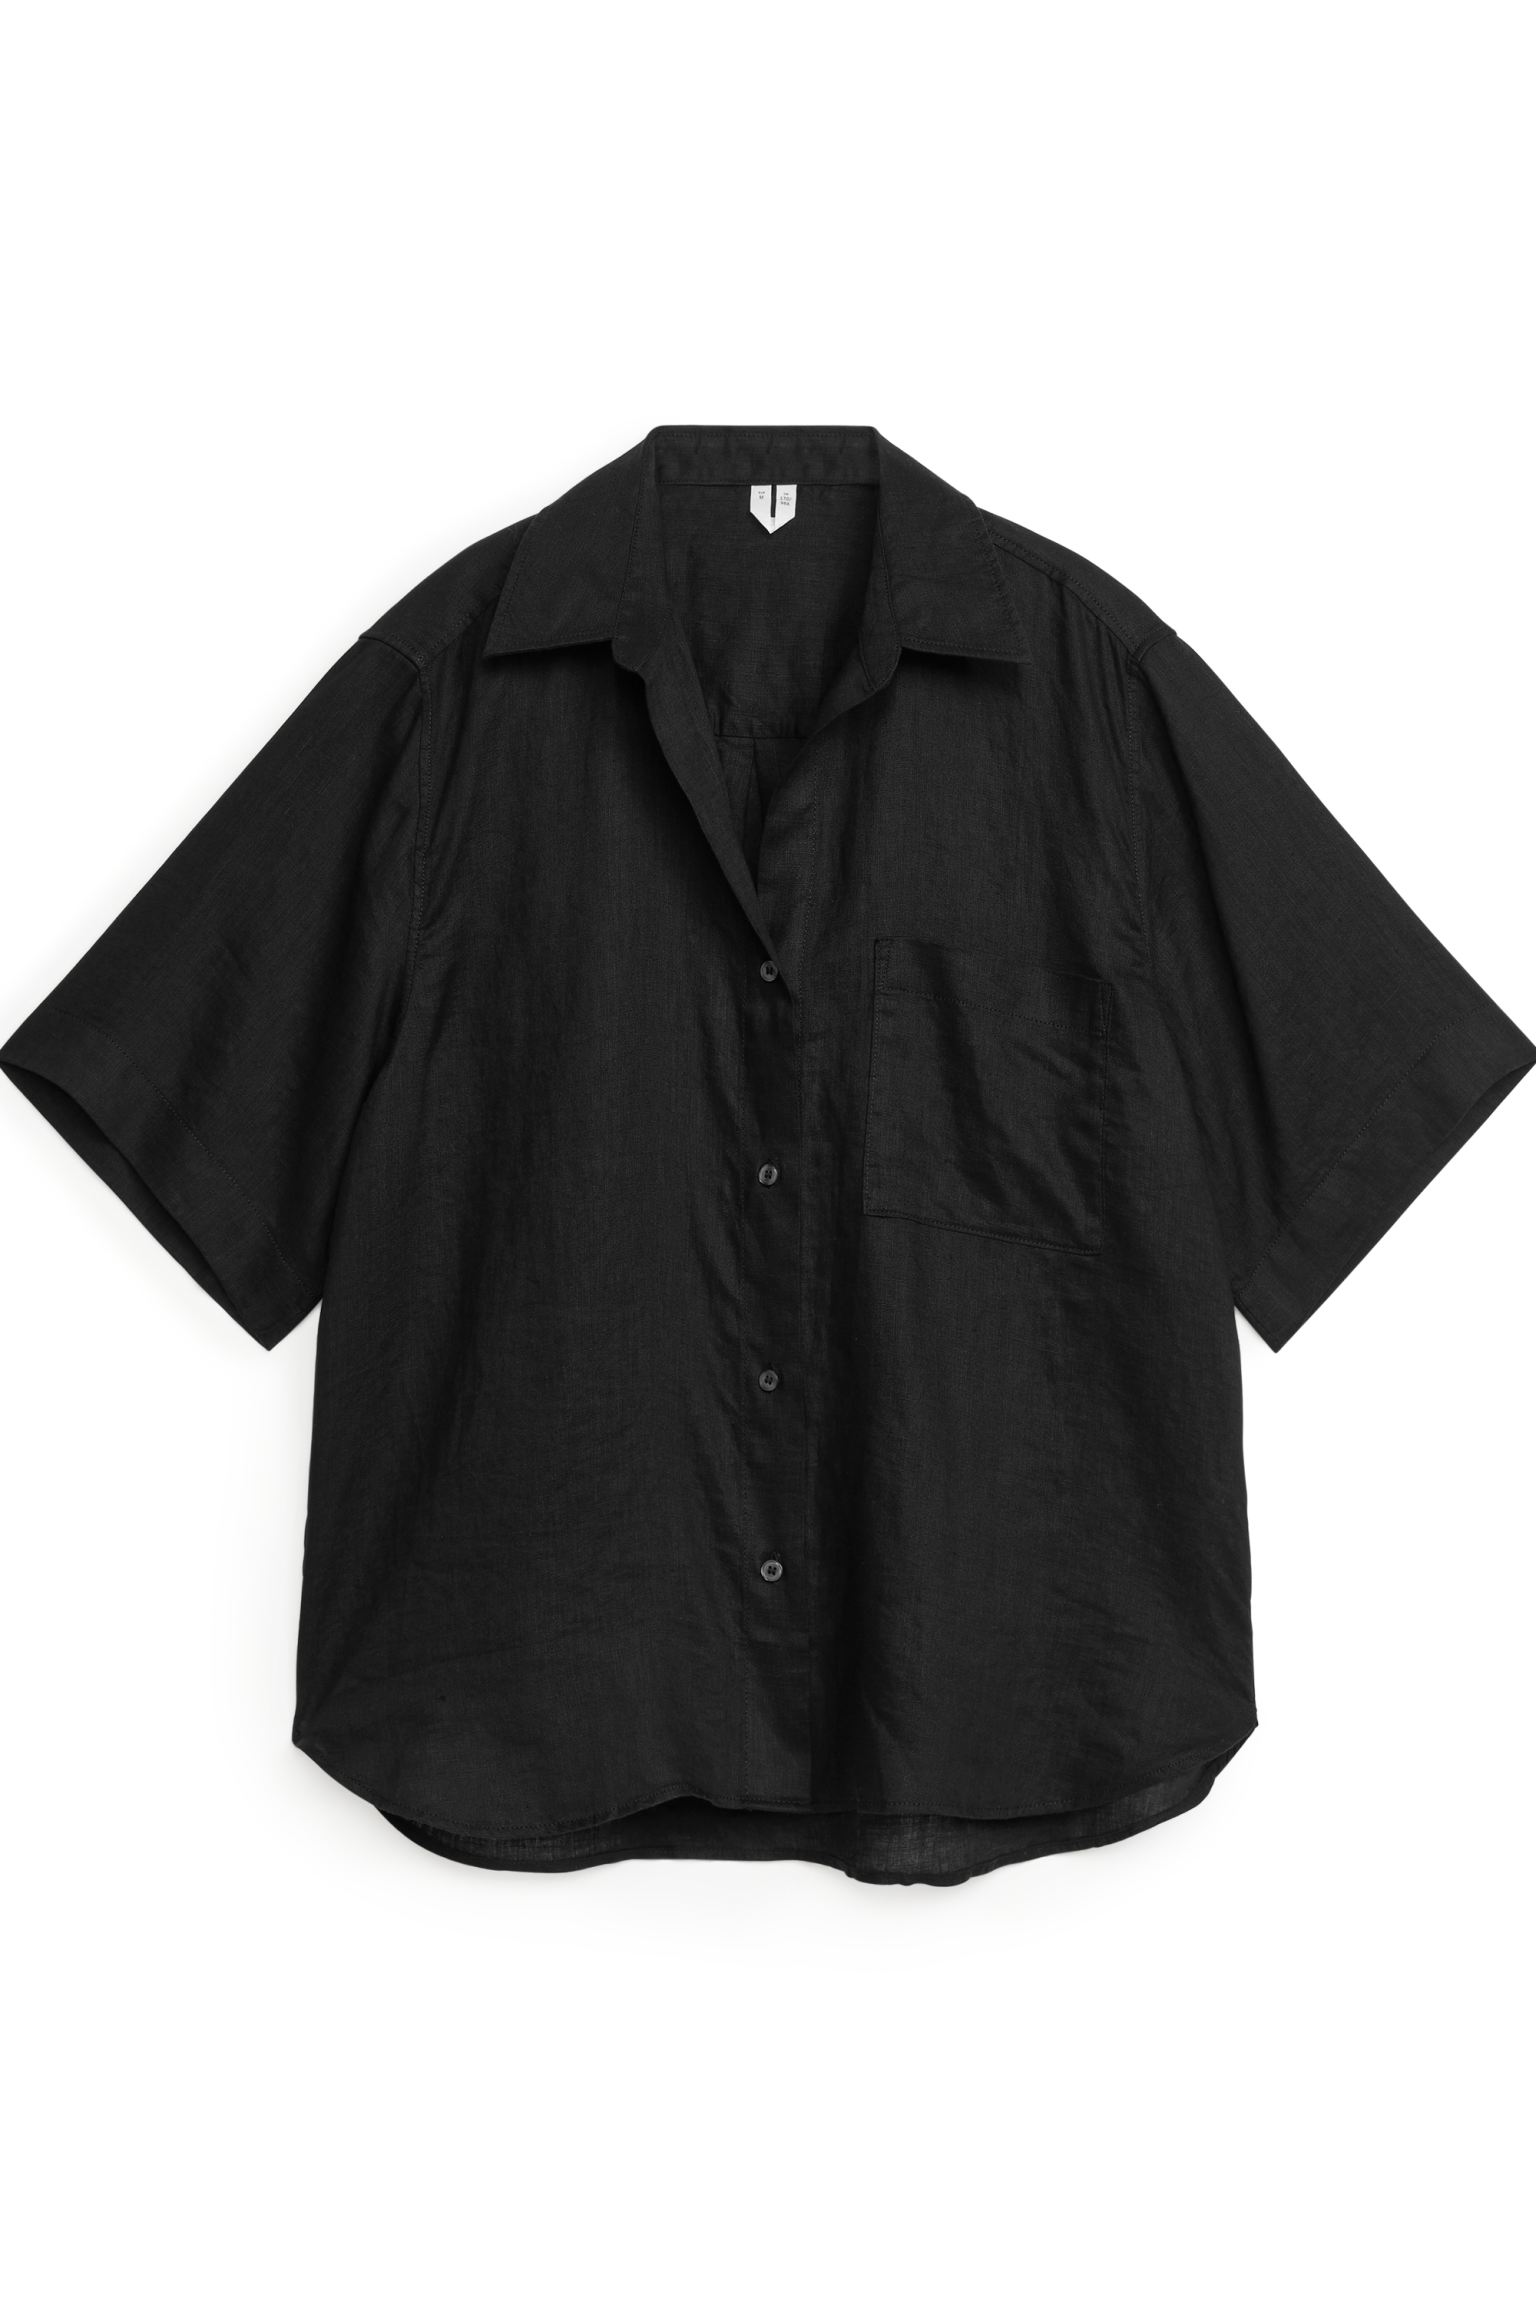 Рубашка женская ARKET 1171573001 черная S (доставка из-за рубежа)